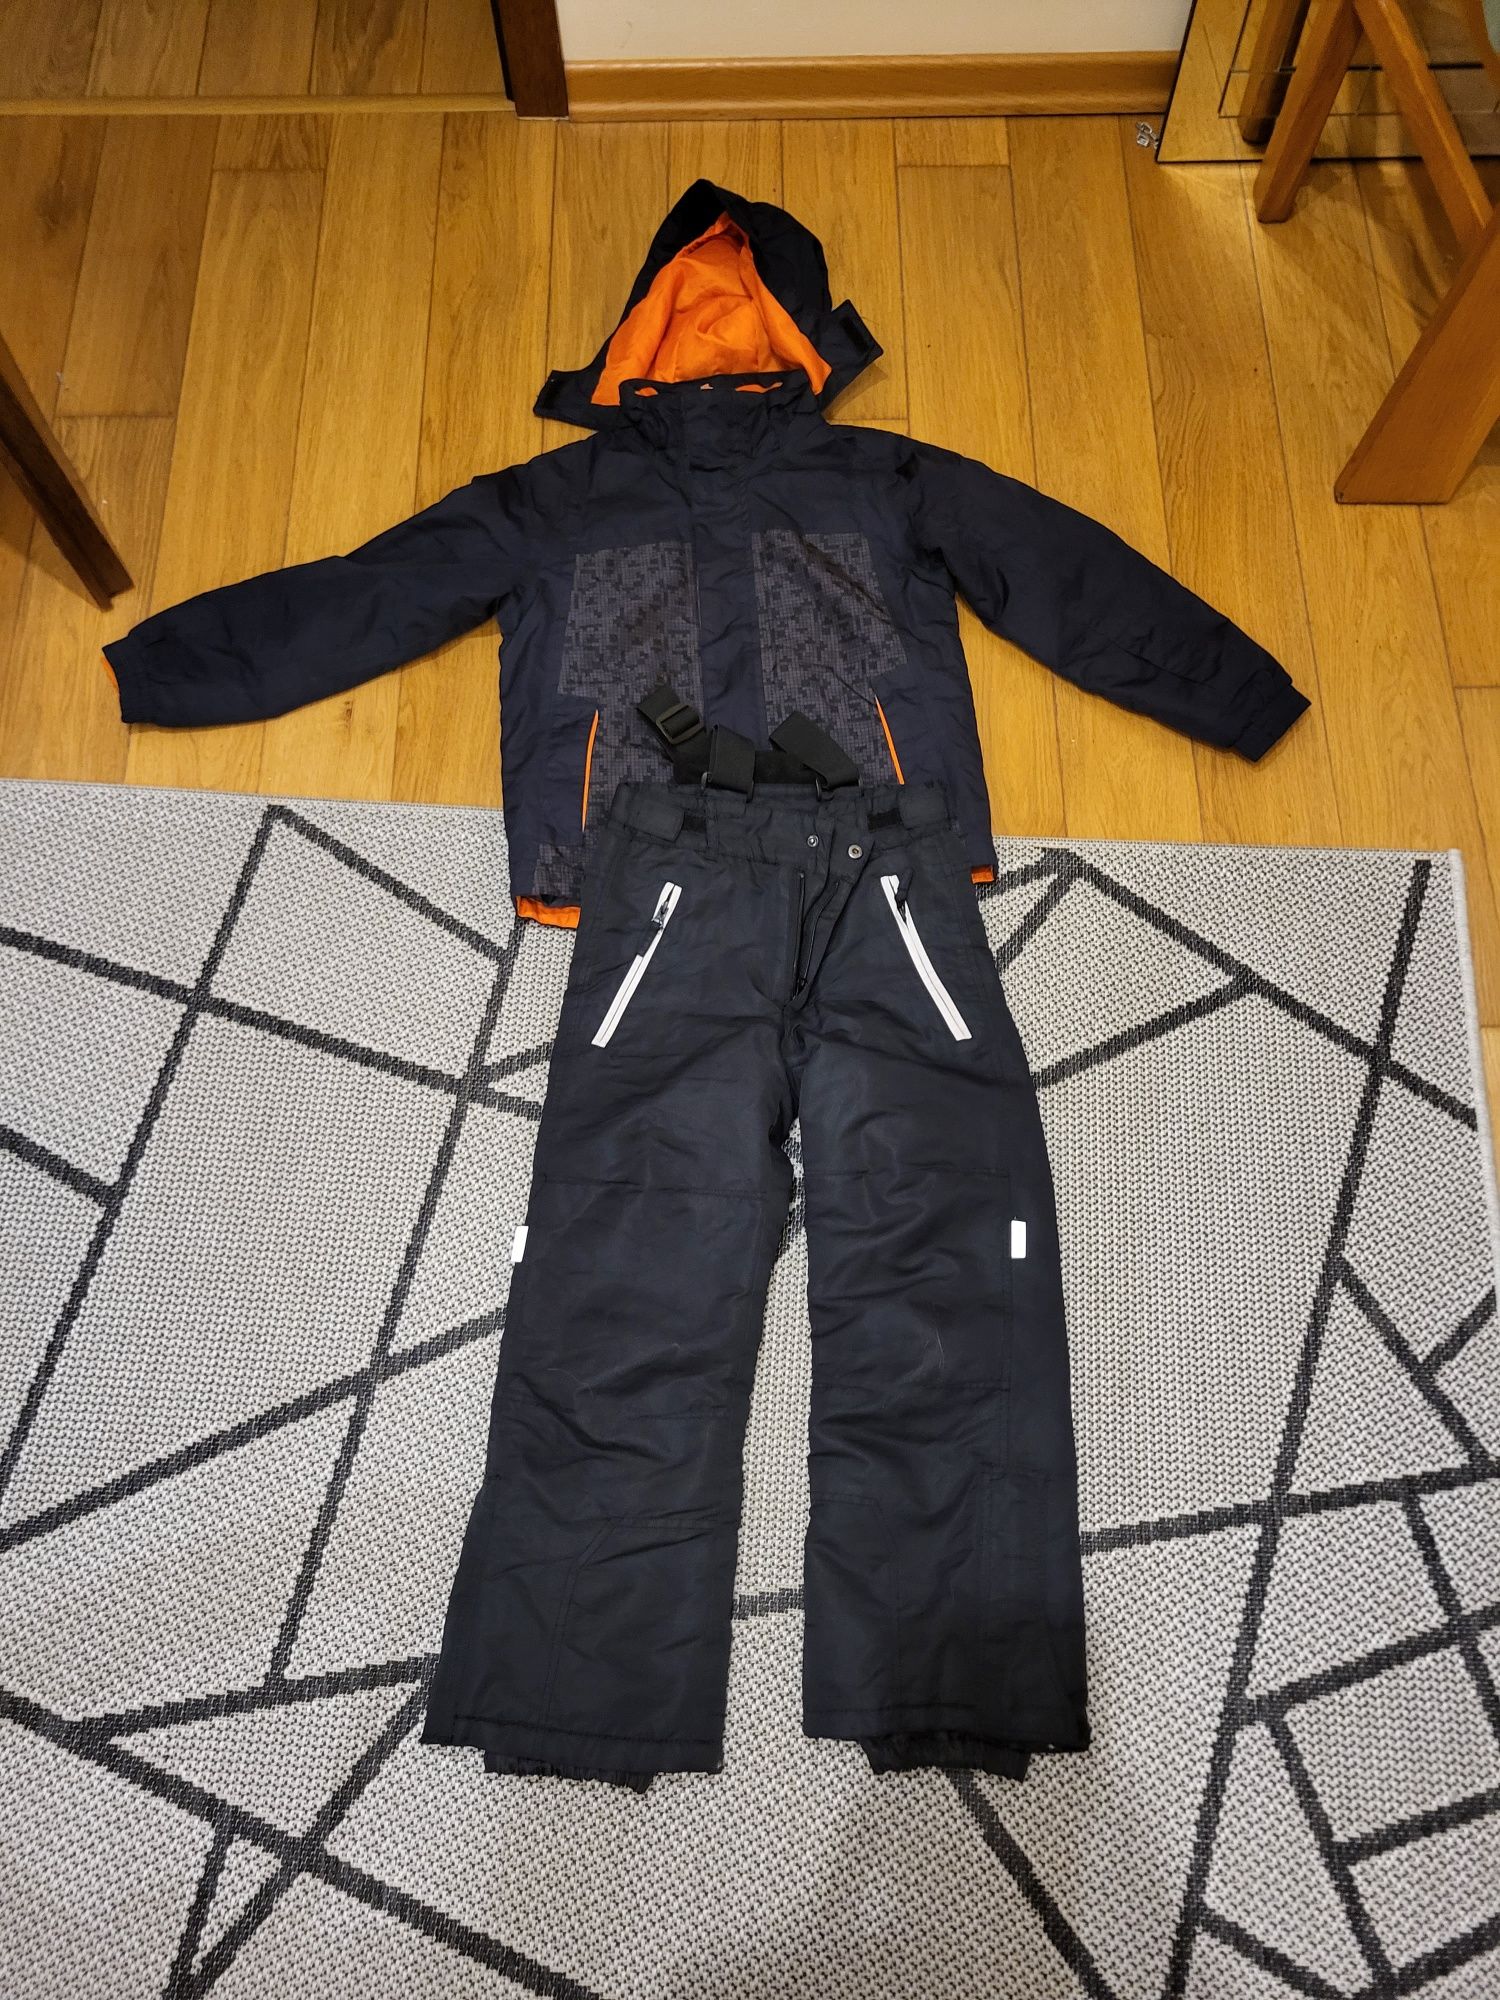 Zestaw ubrań narciarskich(kurtka + spodnie)